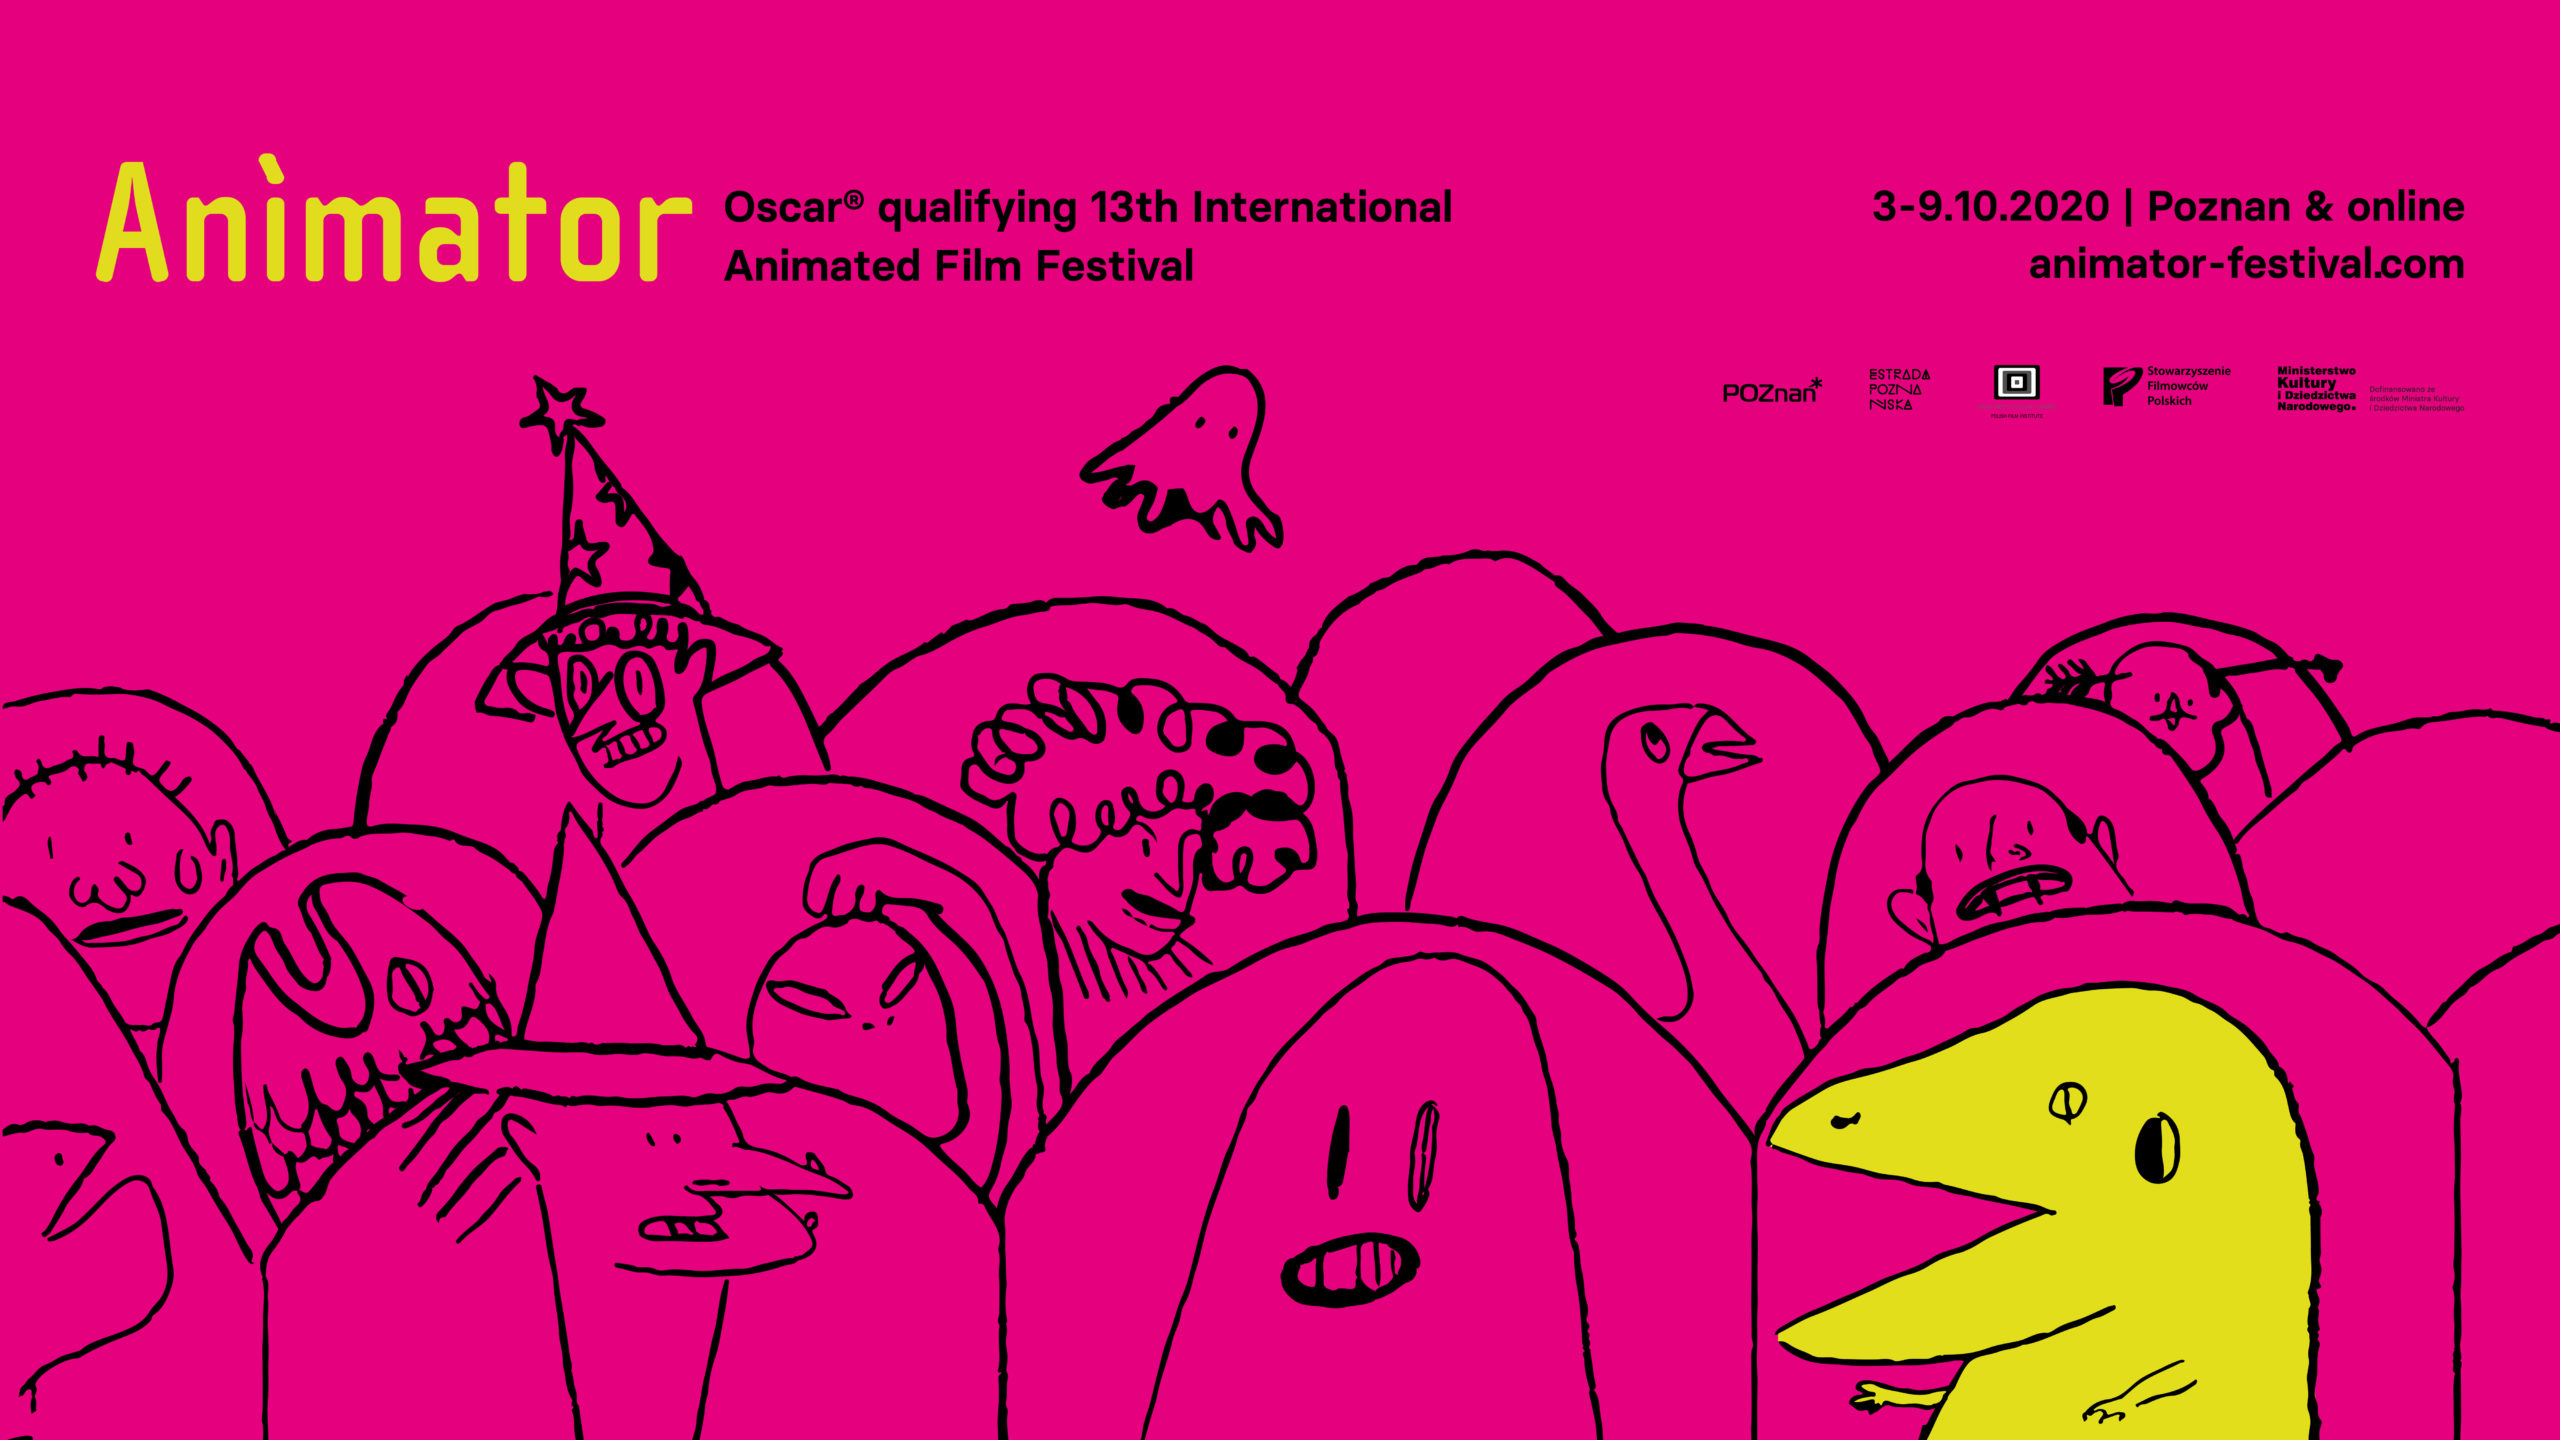 Festiwal Animator Poznań, 3–9.10.2020 - 13. MFFA ANIMATOR: identyfikacja wizualna i pierwsze programowe zapowiedzi